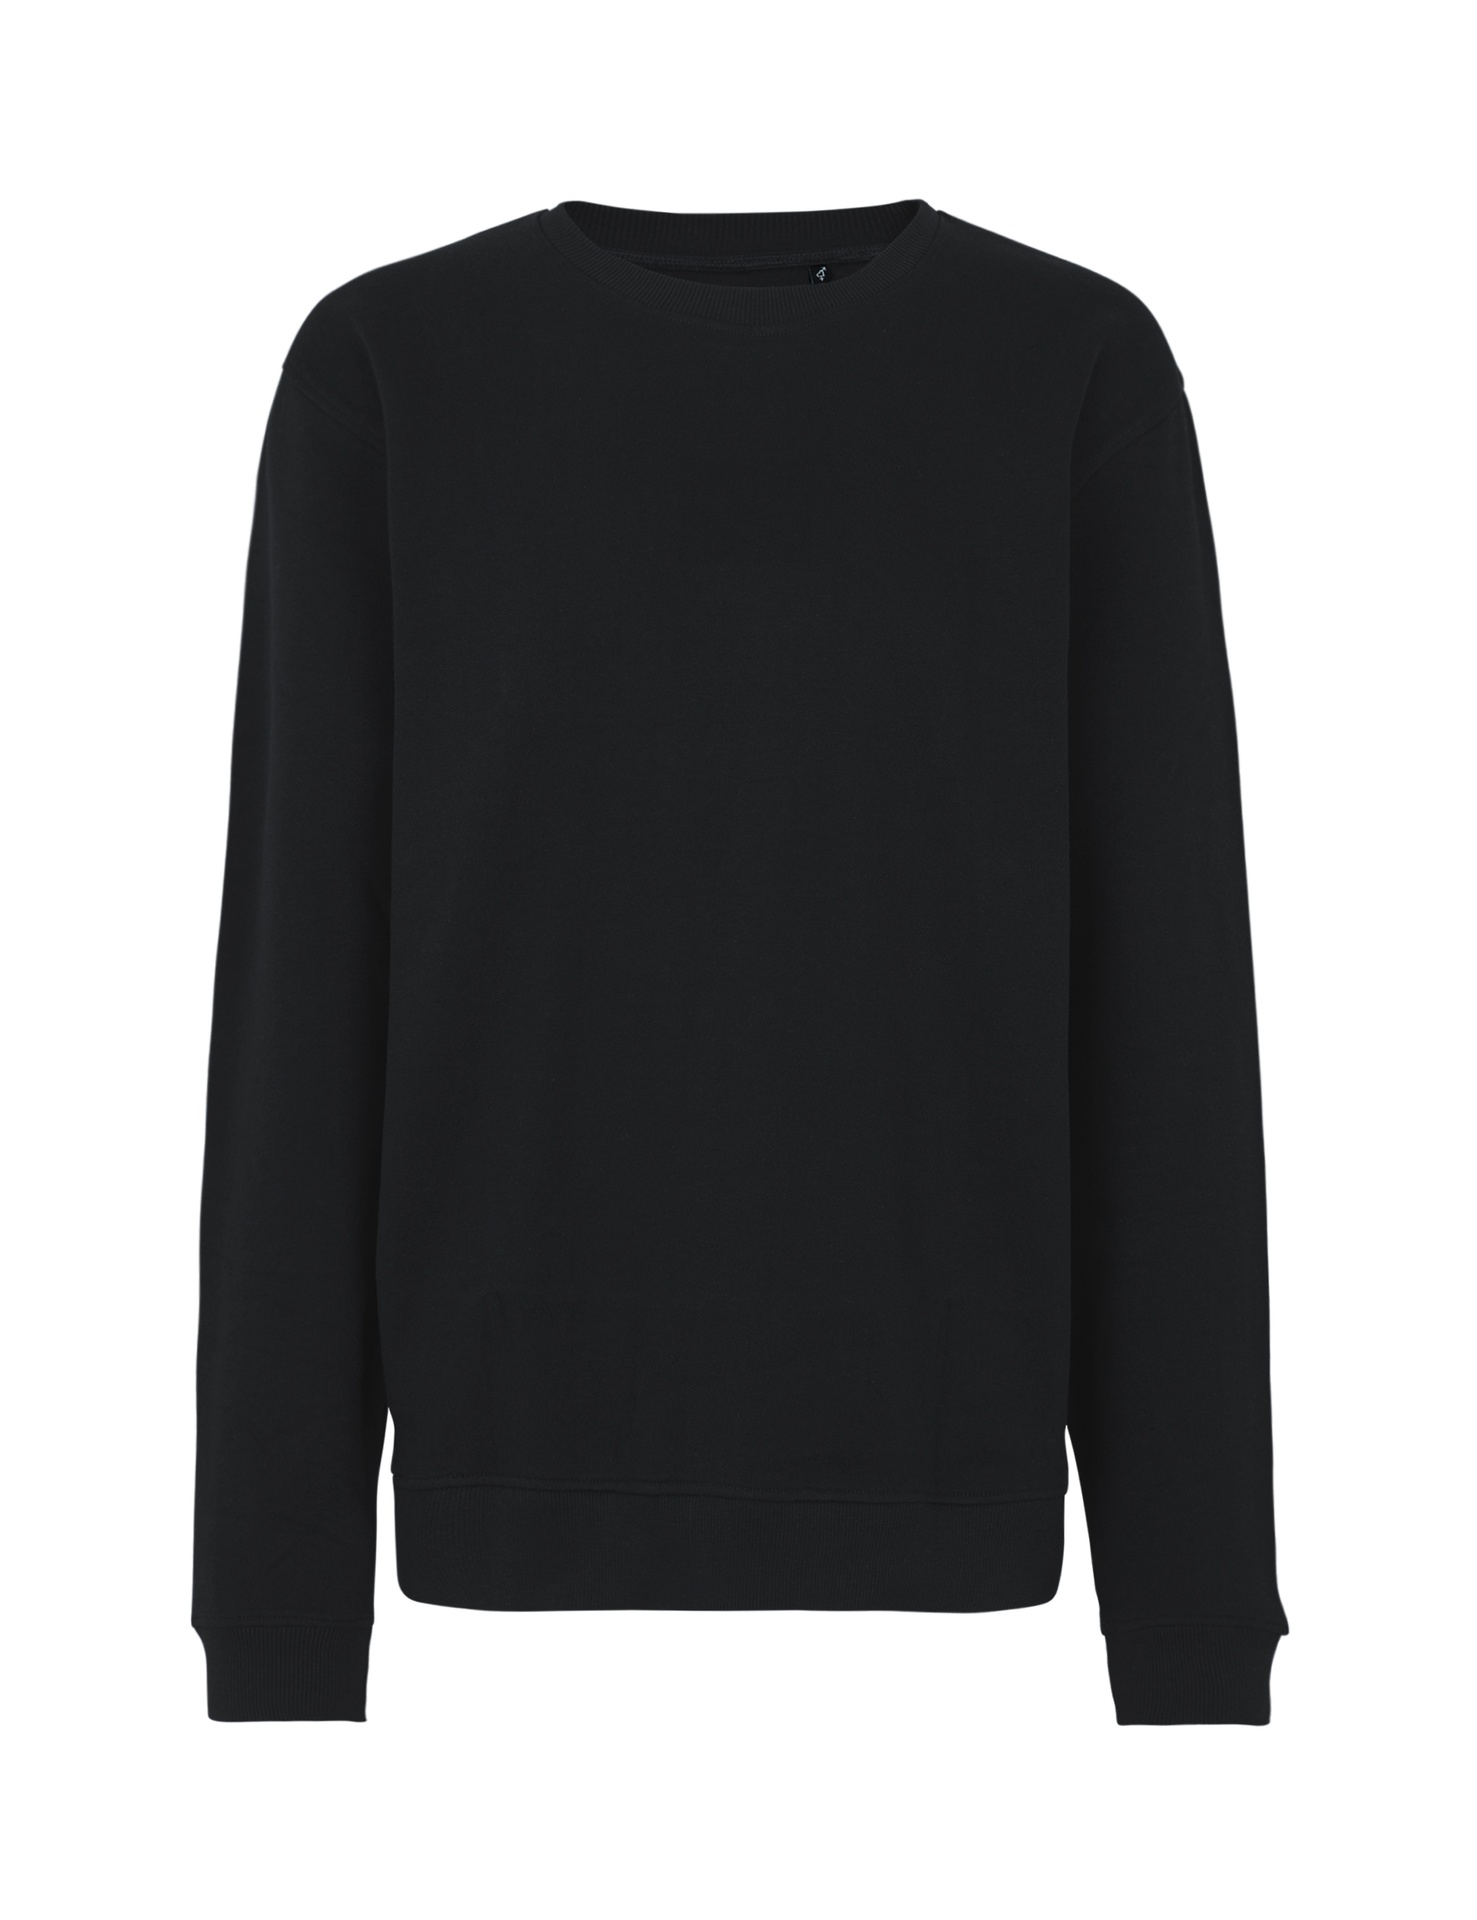 [PR/03526] Unisex Workwear Sweatshirt (Black 03, M)